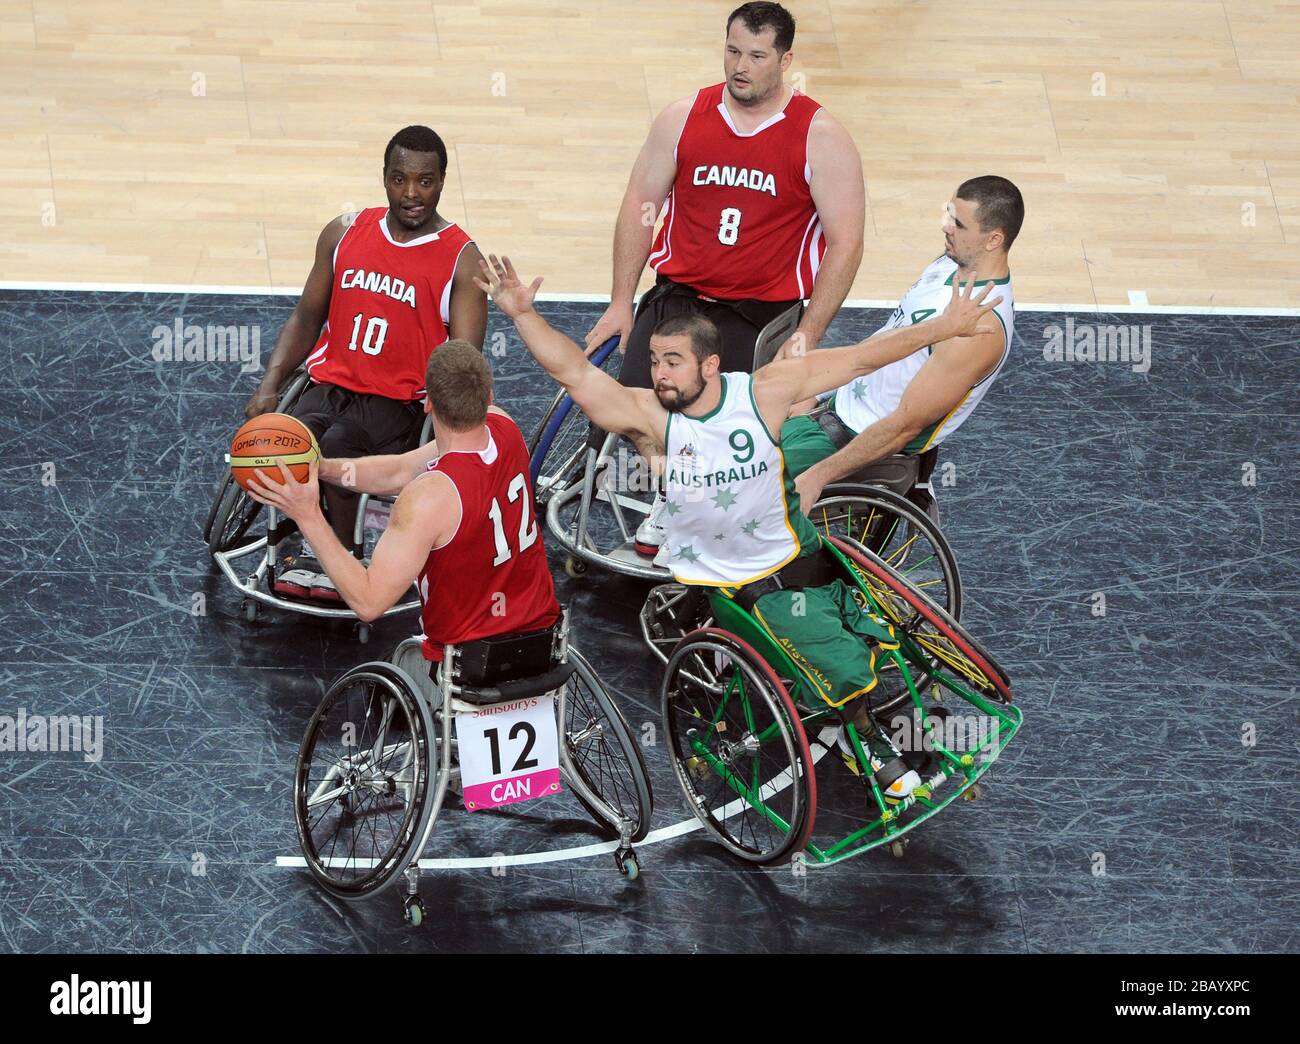 Le Tristan Knowles d'Australie tente de bloquer Patrick Anderson du Canada lors de la finale masculine de basket-ball en fauteuil roulant entre l'Australie et le Canada à la North Greenwich Arena de Londres Banque D'Images